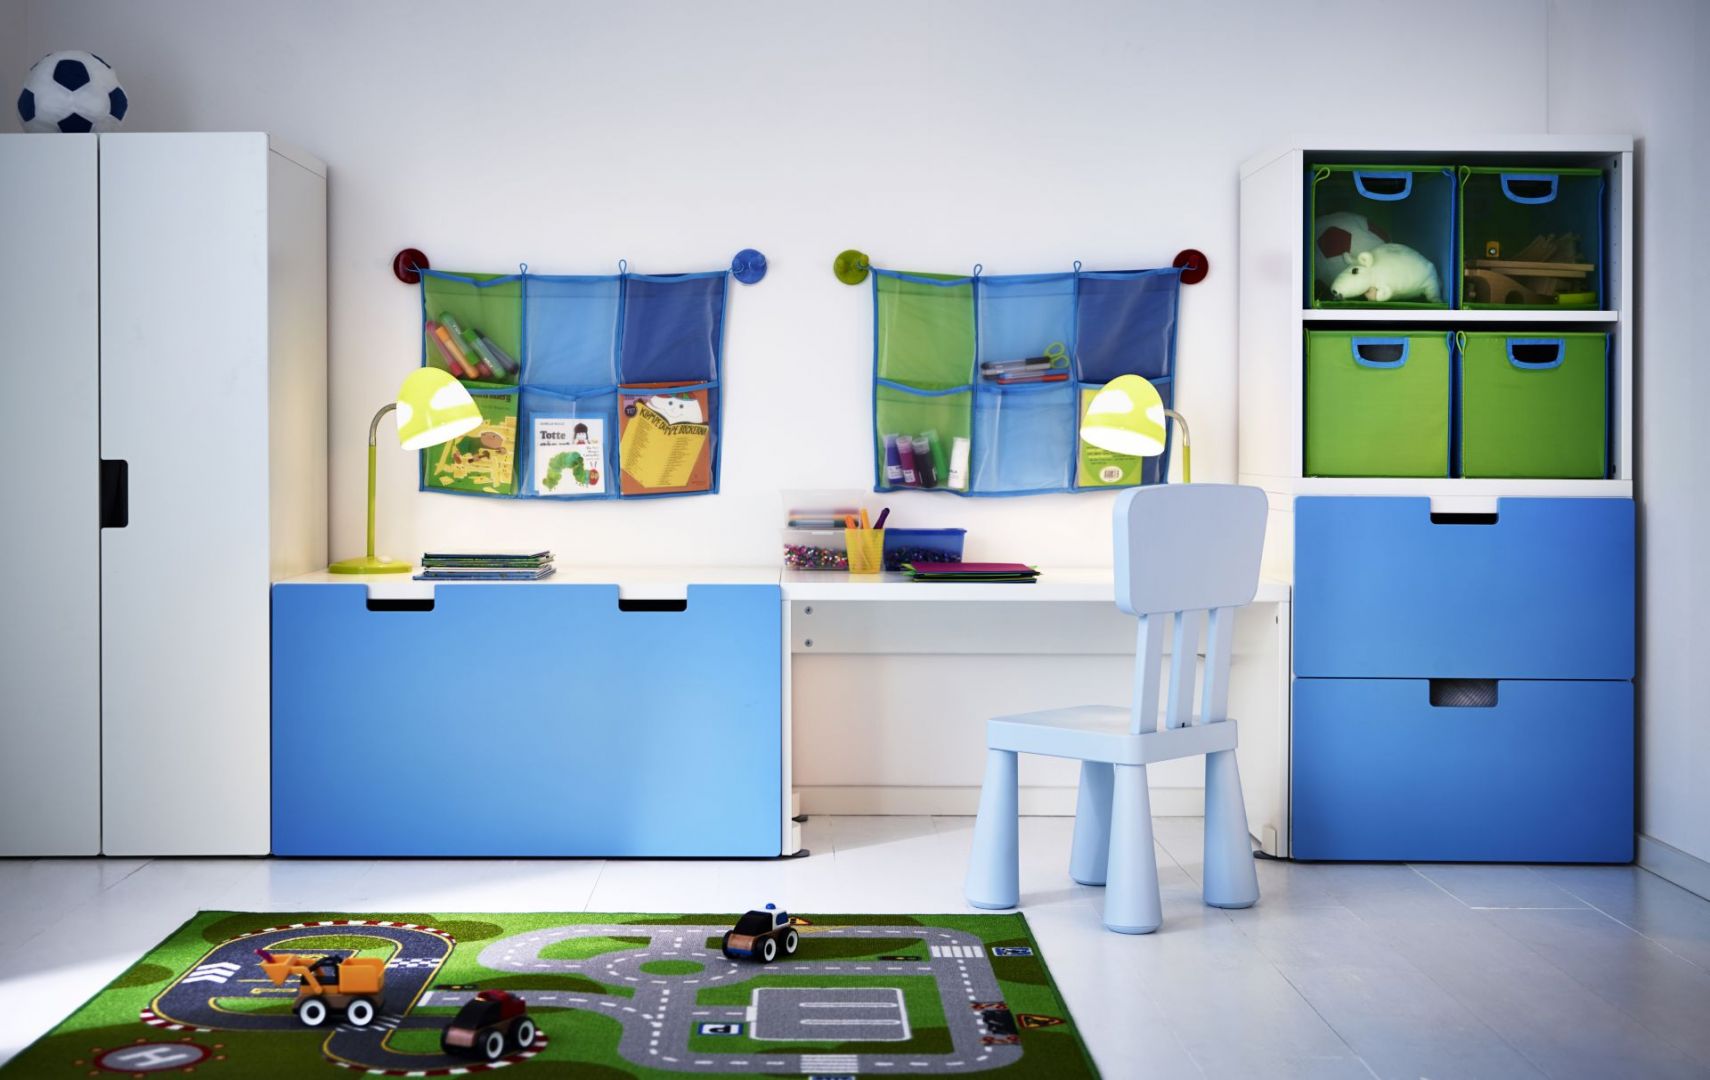 Kieszenie naścienne, pojemniki, koszyki i wszelkie inne przedmioty stworzone do przechowywania sprawdzą się w pokoju dziecka i pozwolą uporządkować zabawki. Fot. IKEA